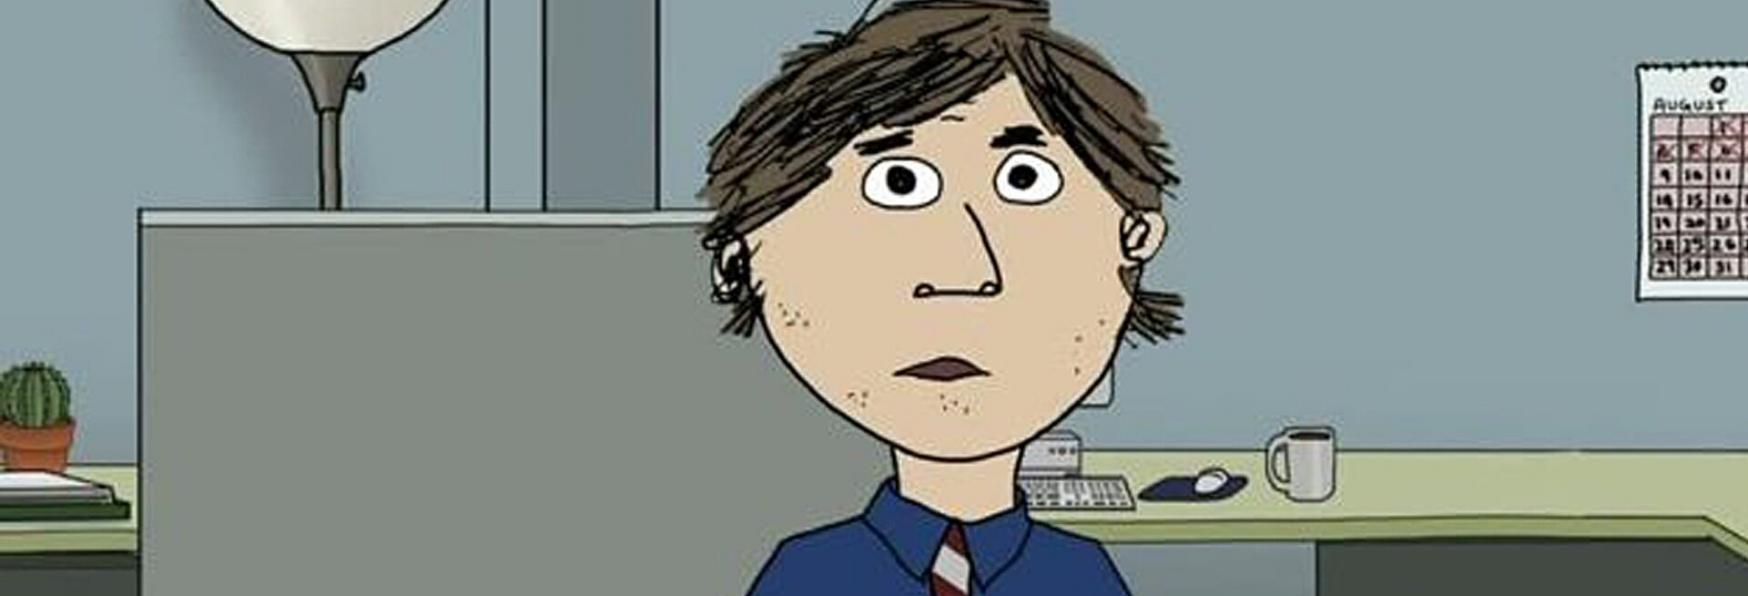 HBO Max annuncia nuove Serie Animate per Adulti, in arrivo a Settembre